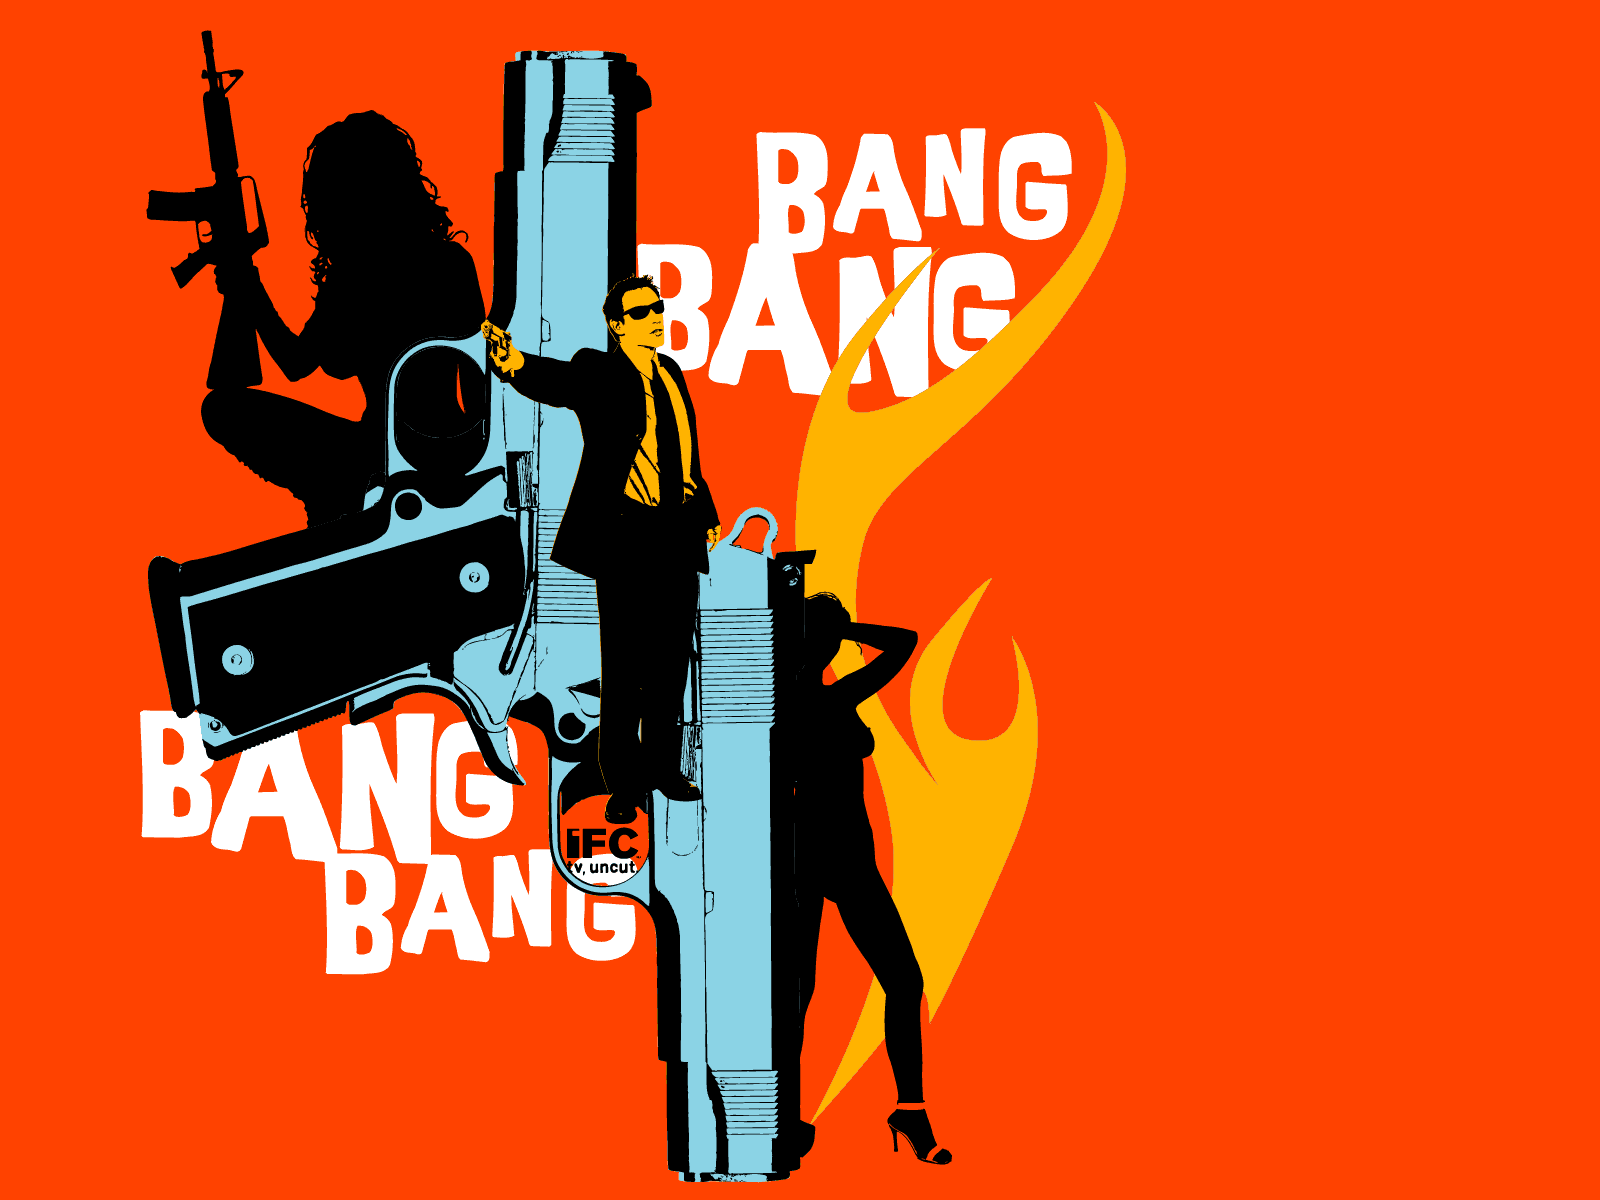 Bang bang face. Bang. Ban ban. G-ba. Bang картинка.